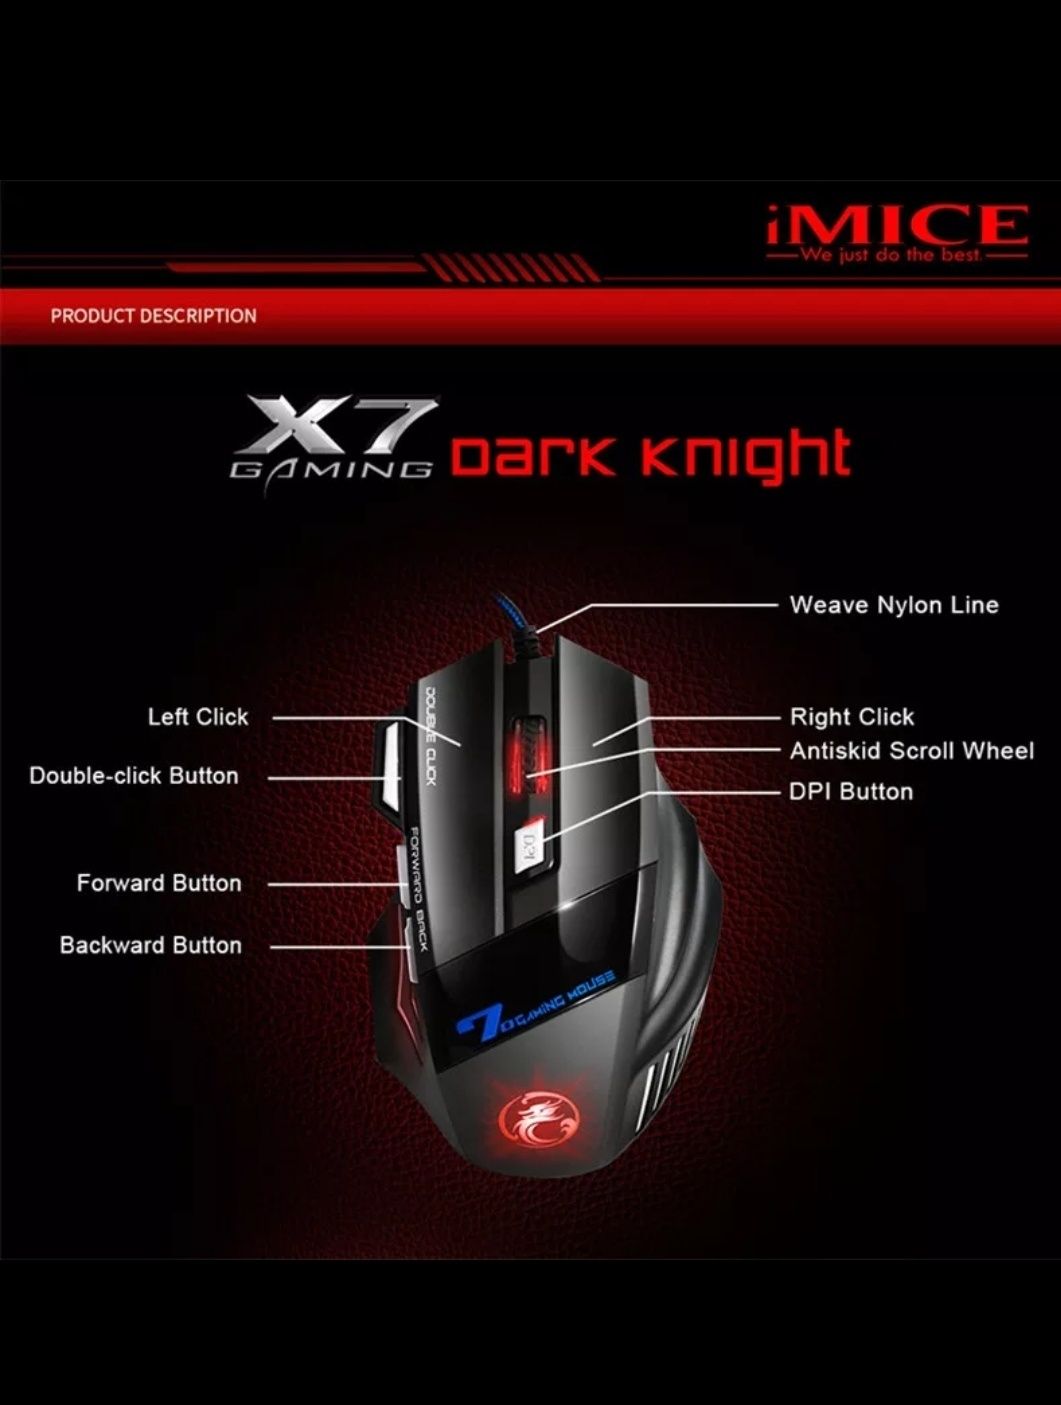 Геймерска комп'ютерна мишка IMice X7 / Игровая компьютерная мыш IMice